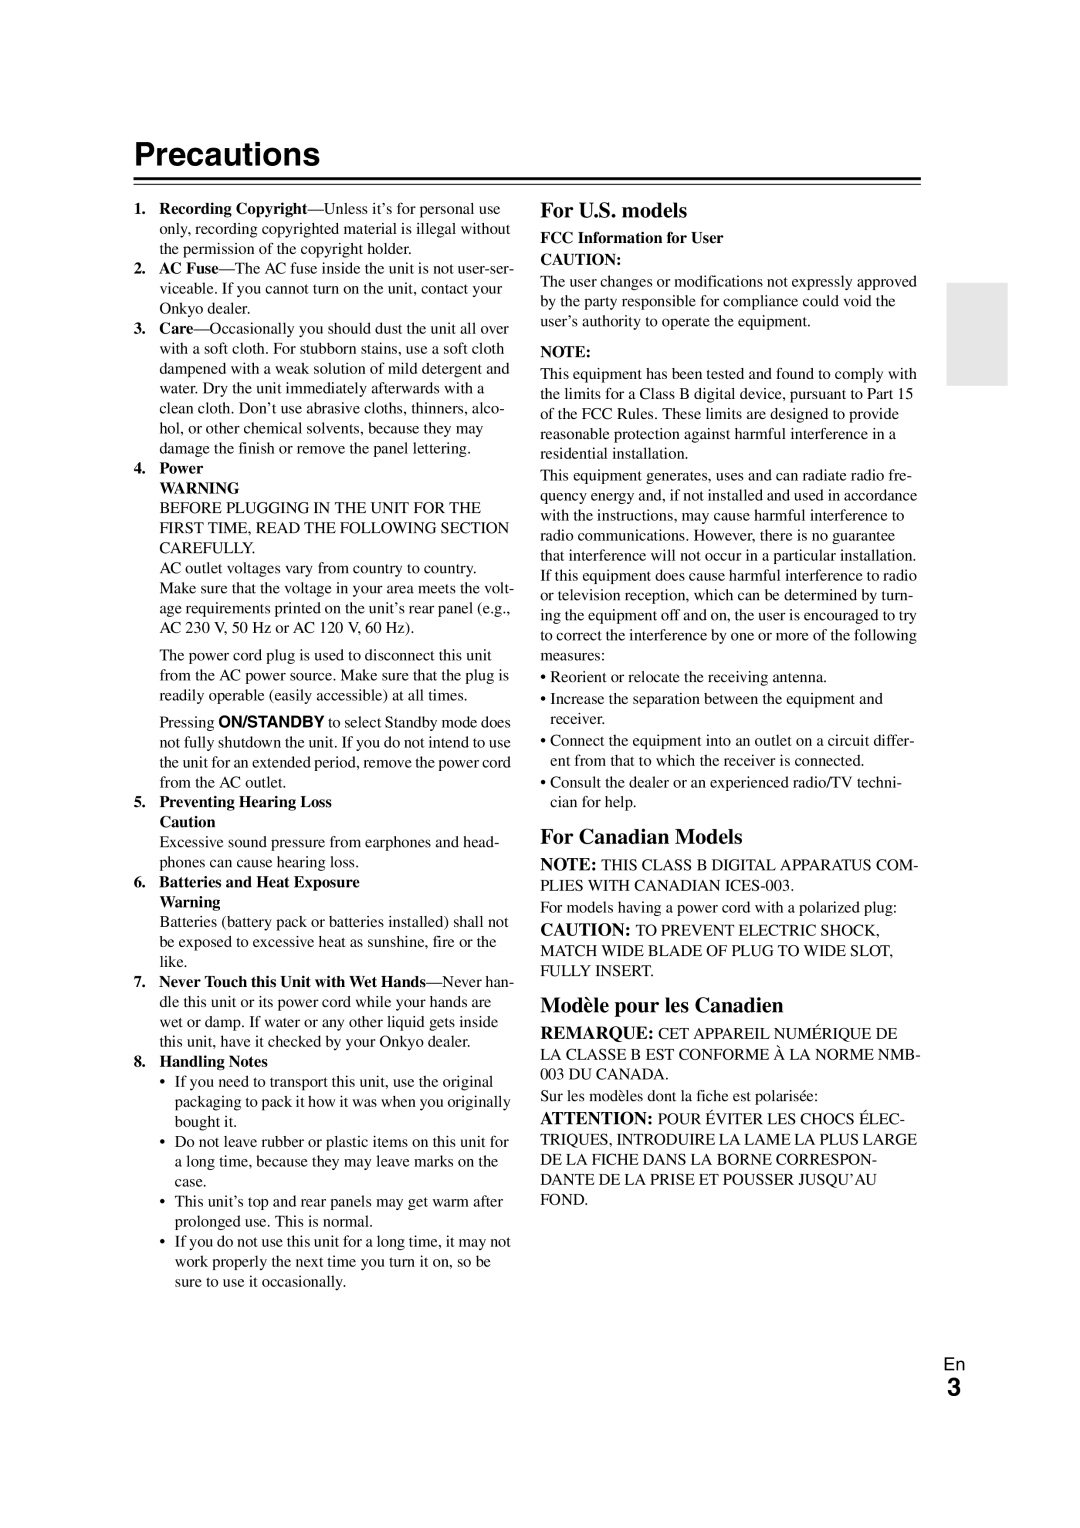 Onkyo TX-NR708 instruction manual Precautions, For U.S. models, For Canadian Models, Modèle pour les Canadien 